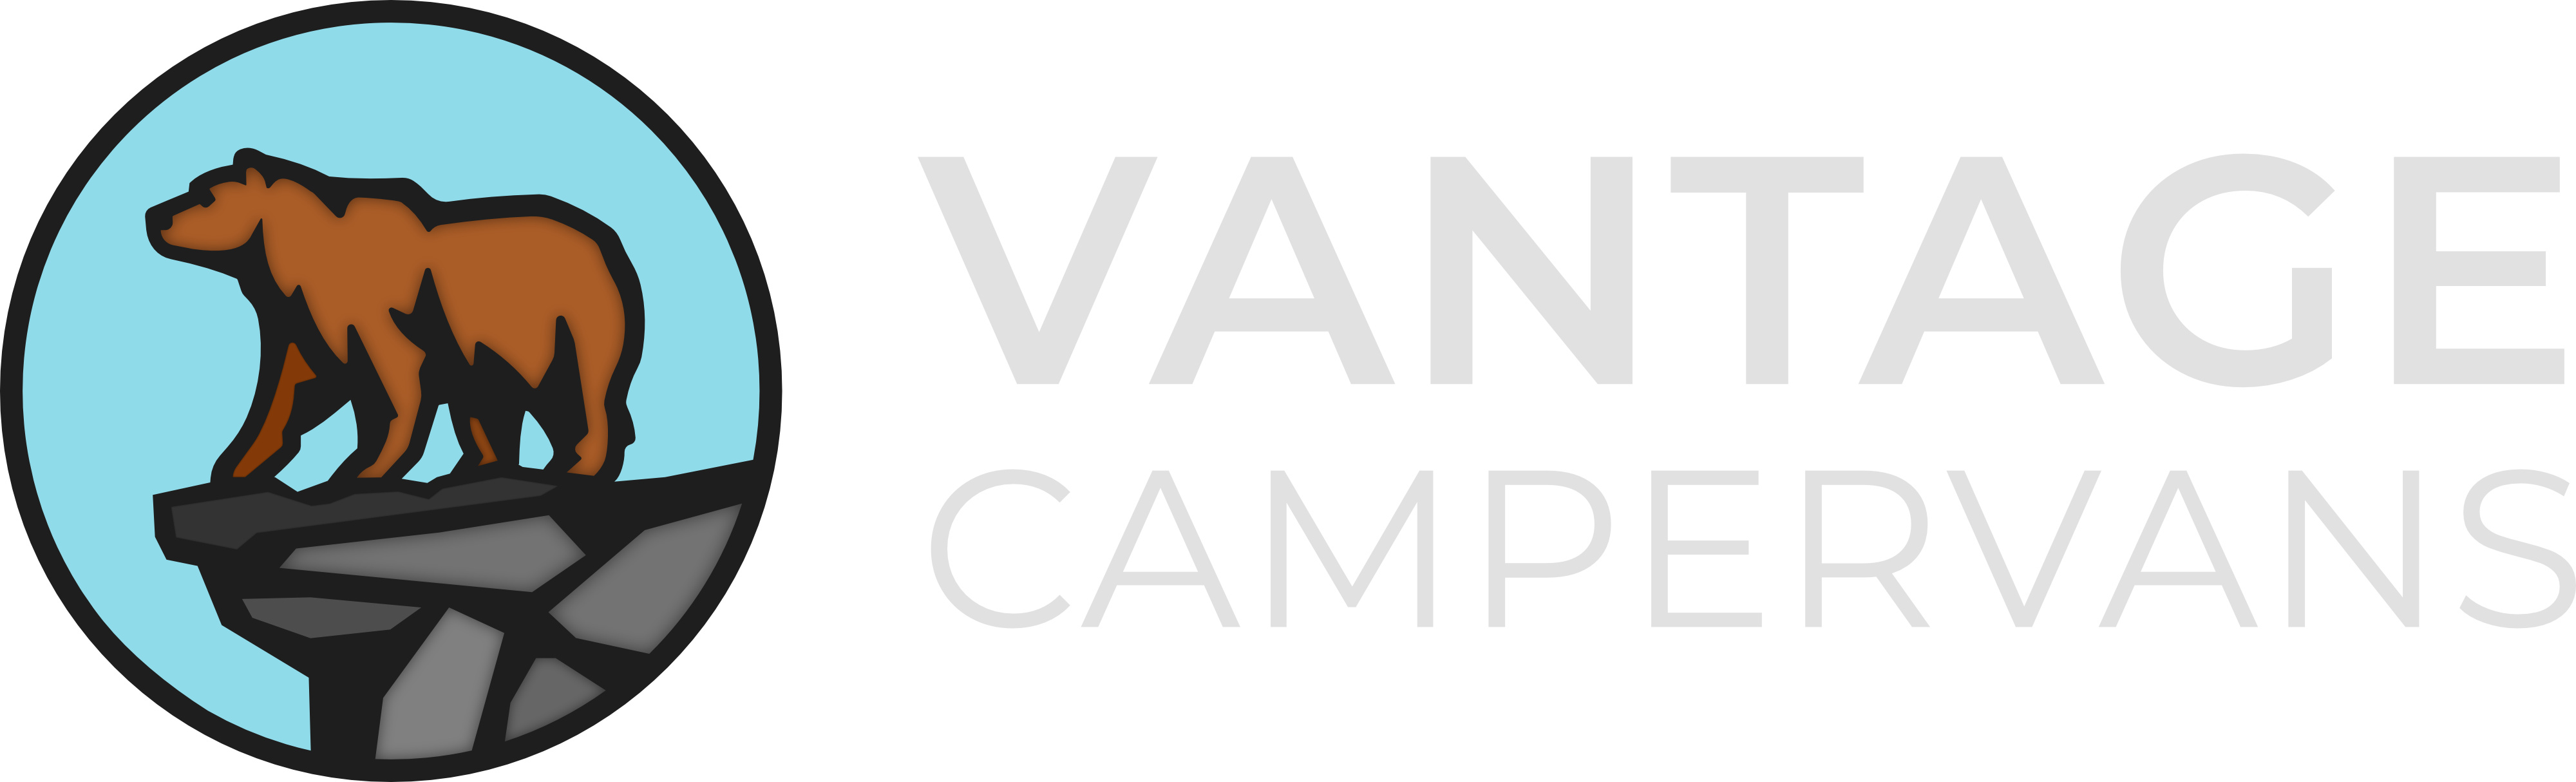 vantage campervans logo 